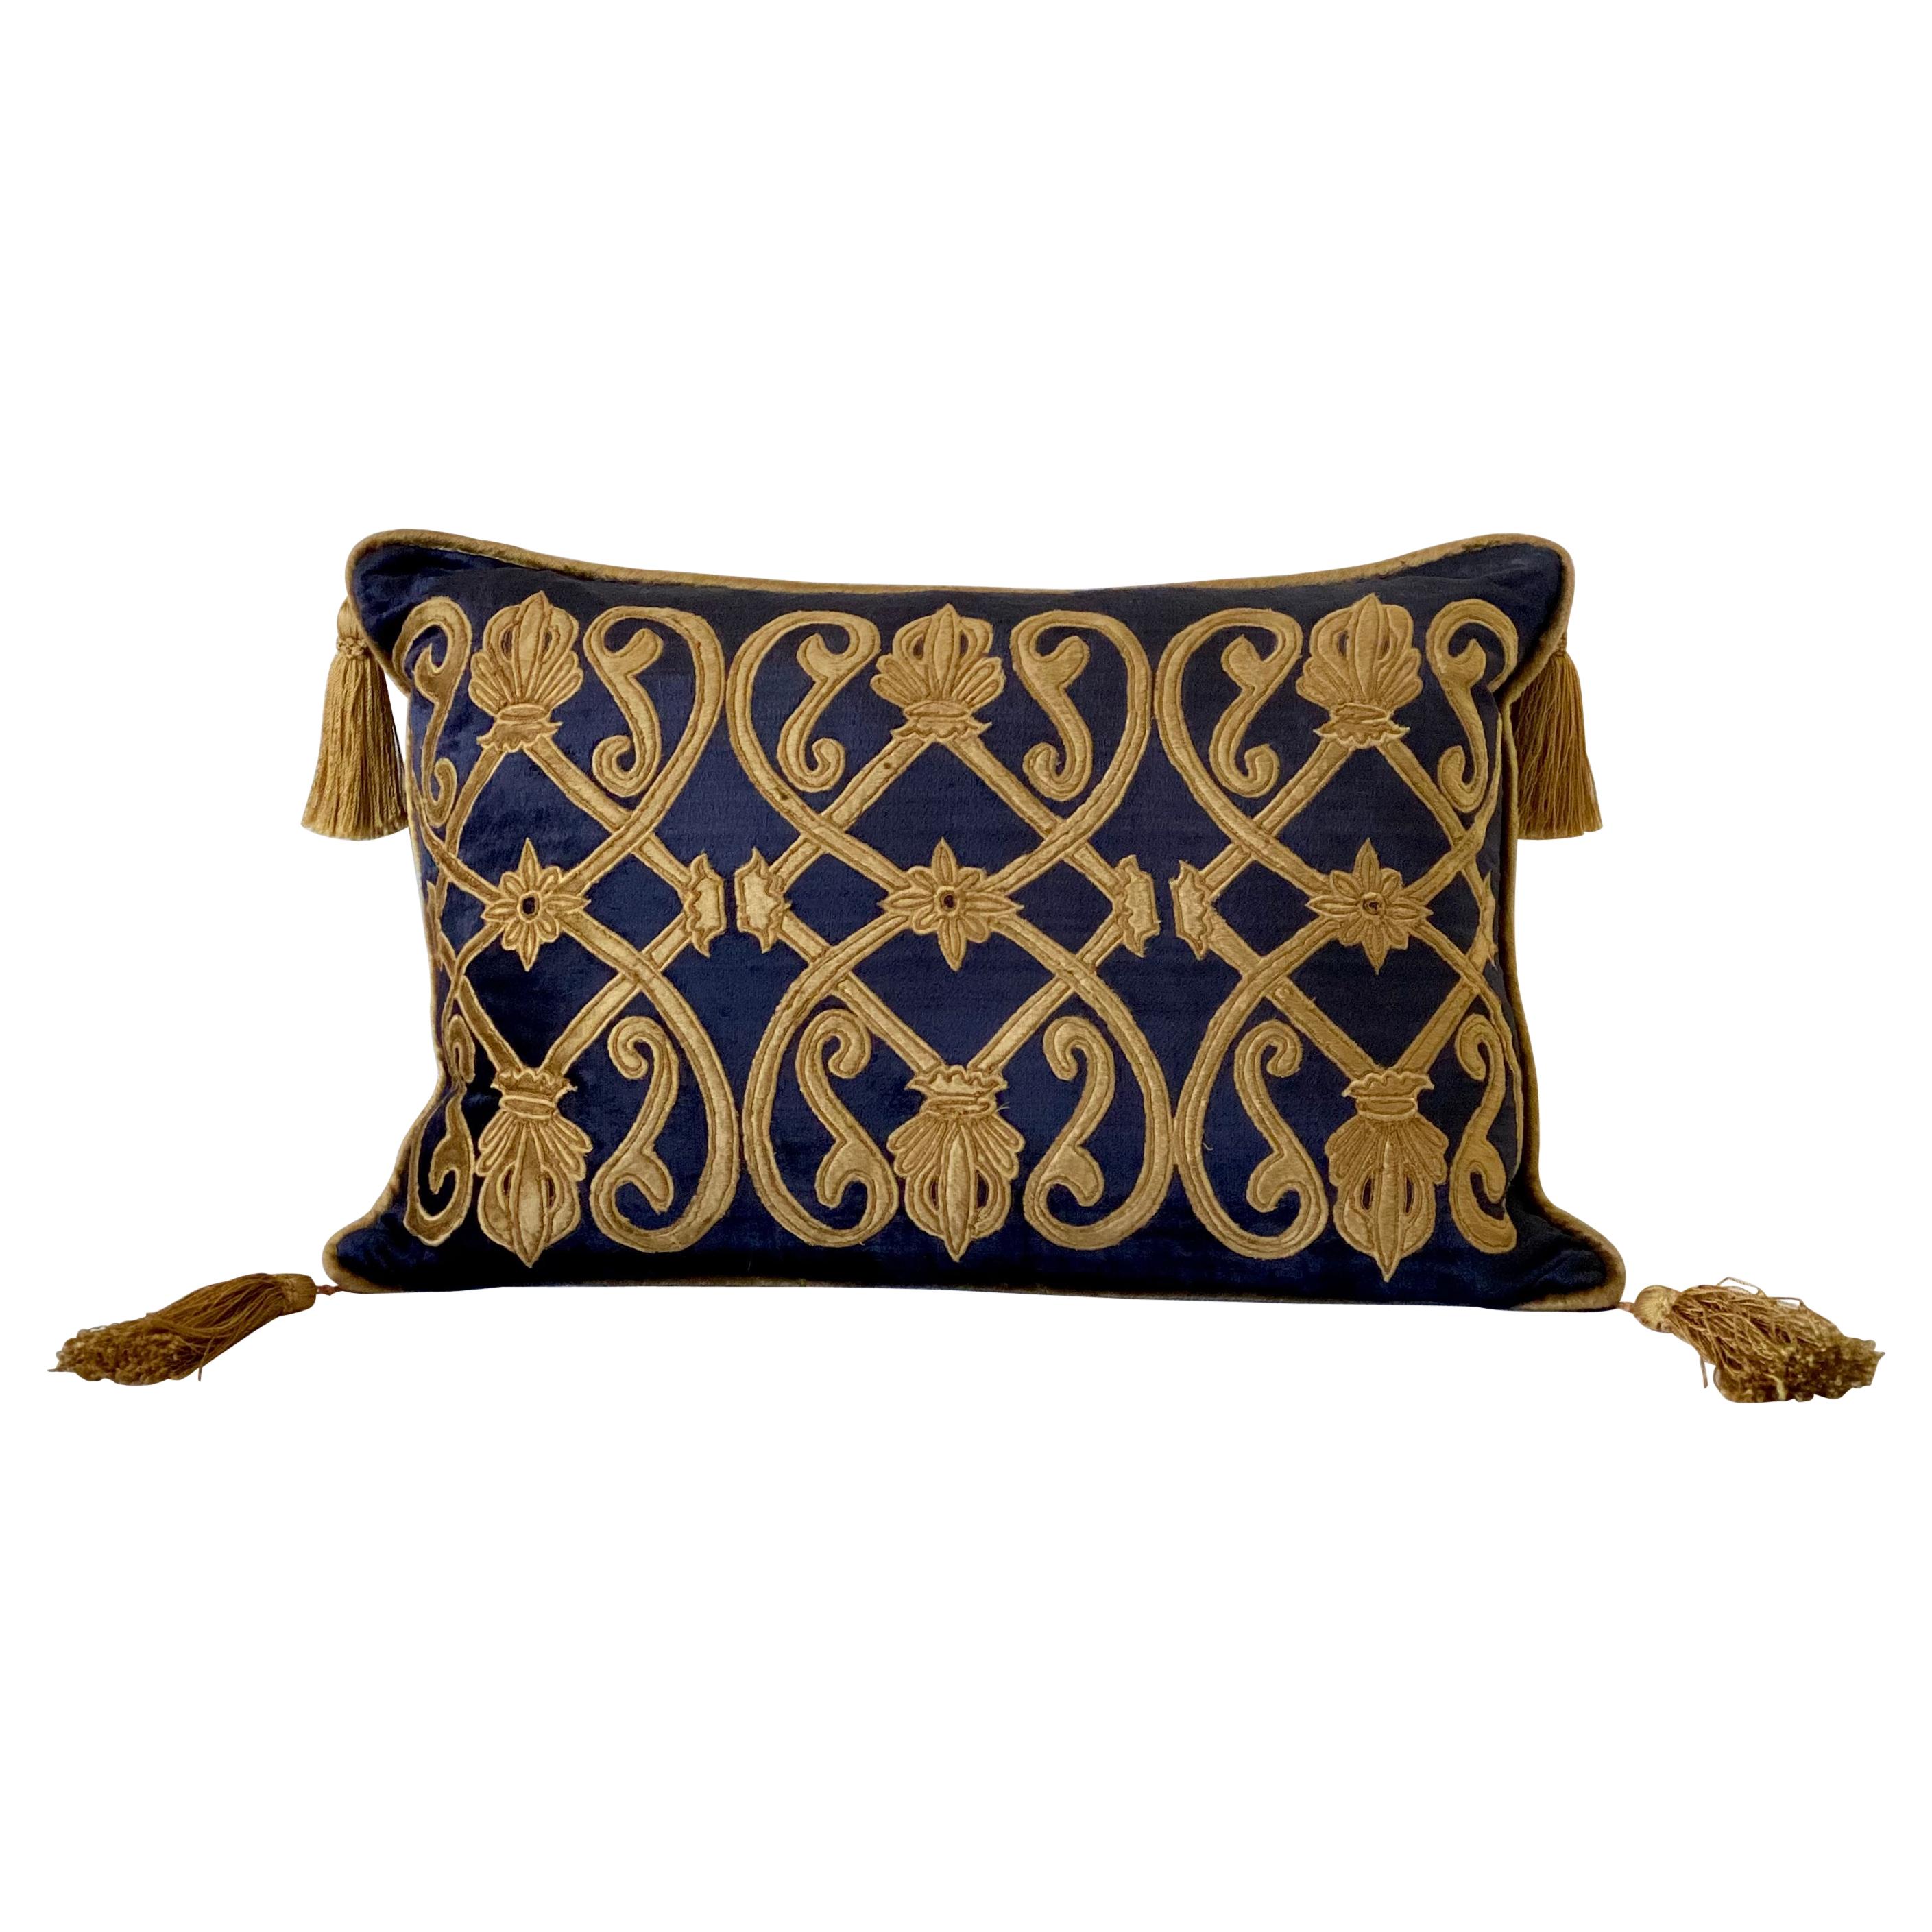 Antique Velvet with Velvet Applique Design, Polster Pillow